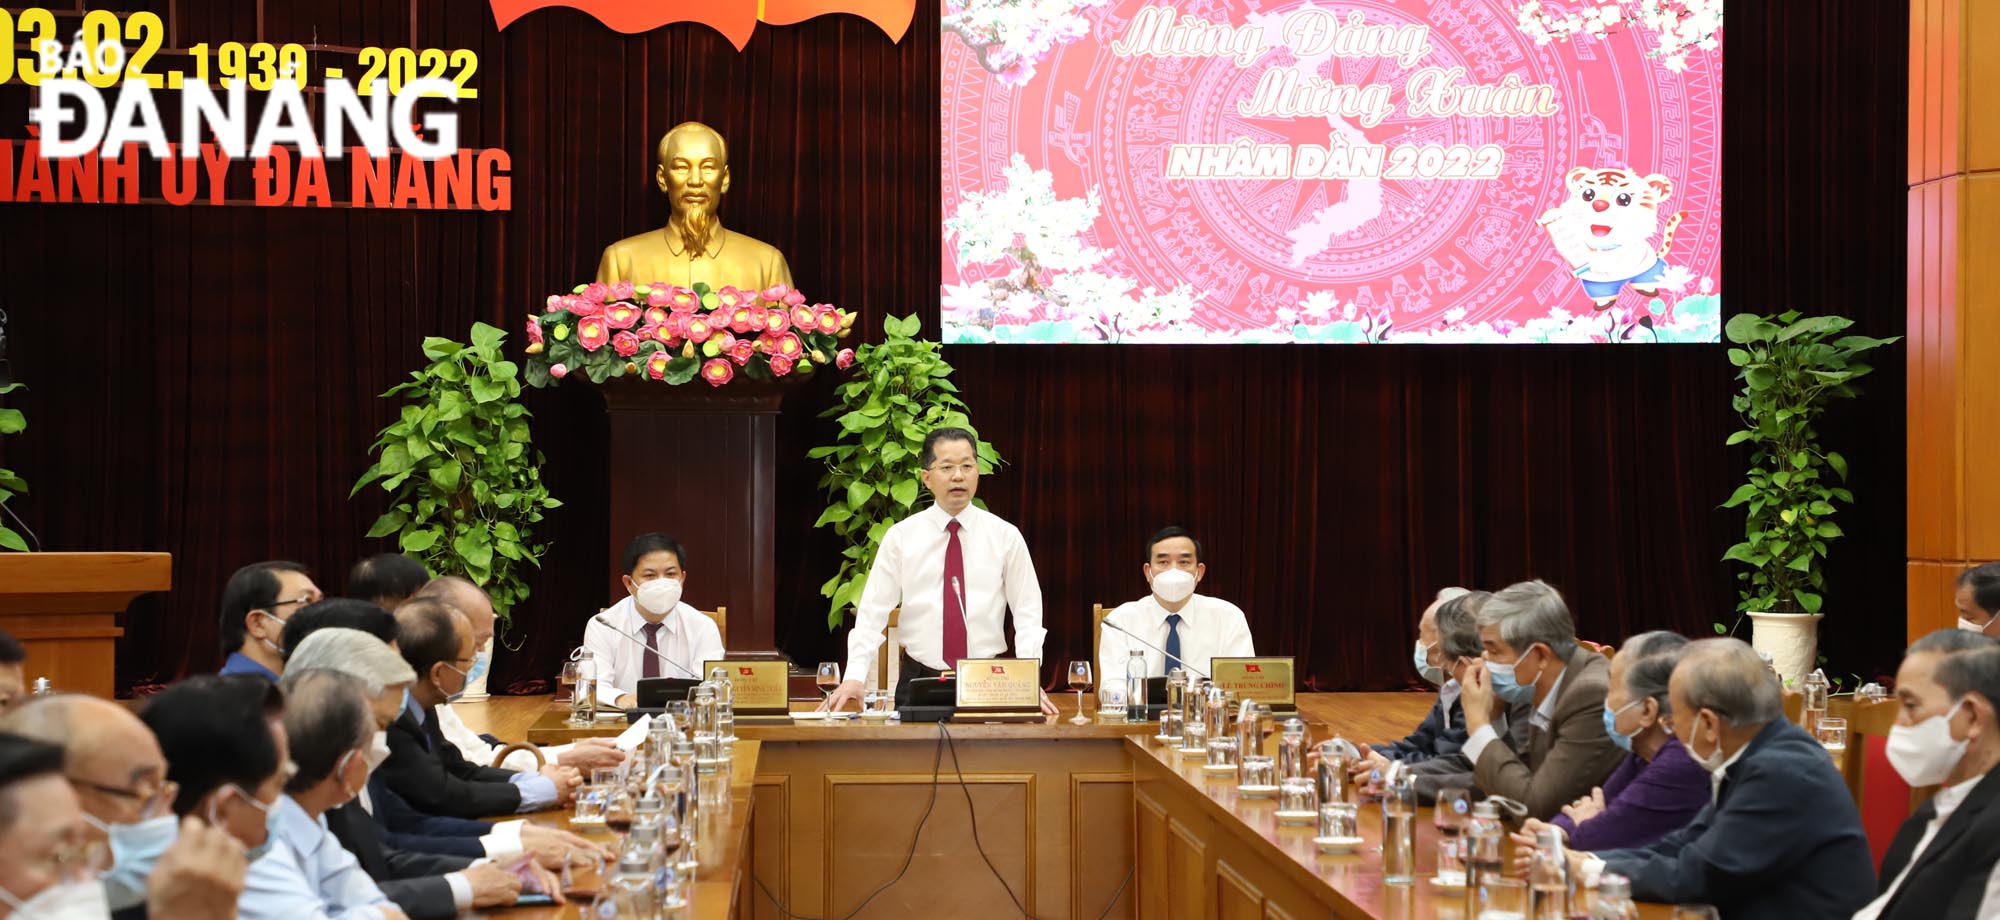 Gặp mặt cán bộ hưu trí cao cấp, tướng lĩnh và nguyên lãnh đạo tỉnh Quảng Nam, thành phố Đà Nẵng